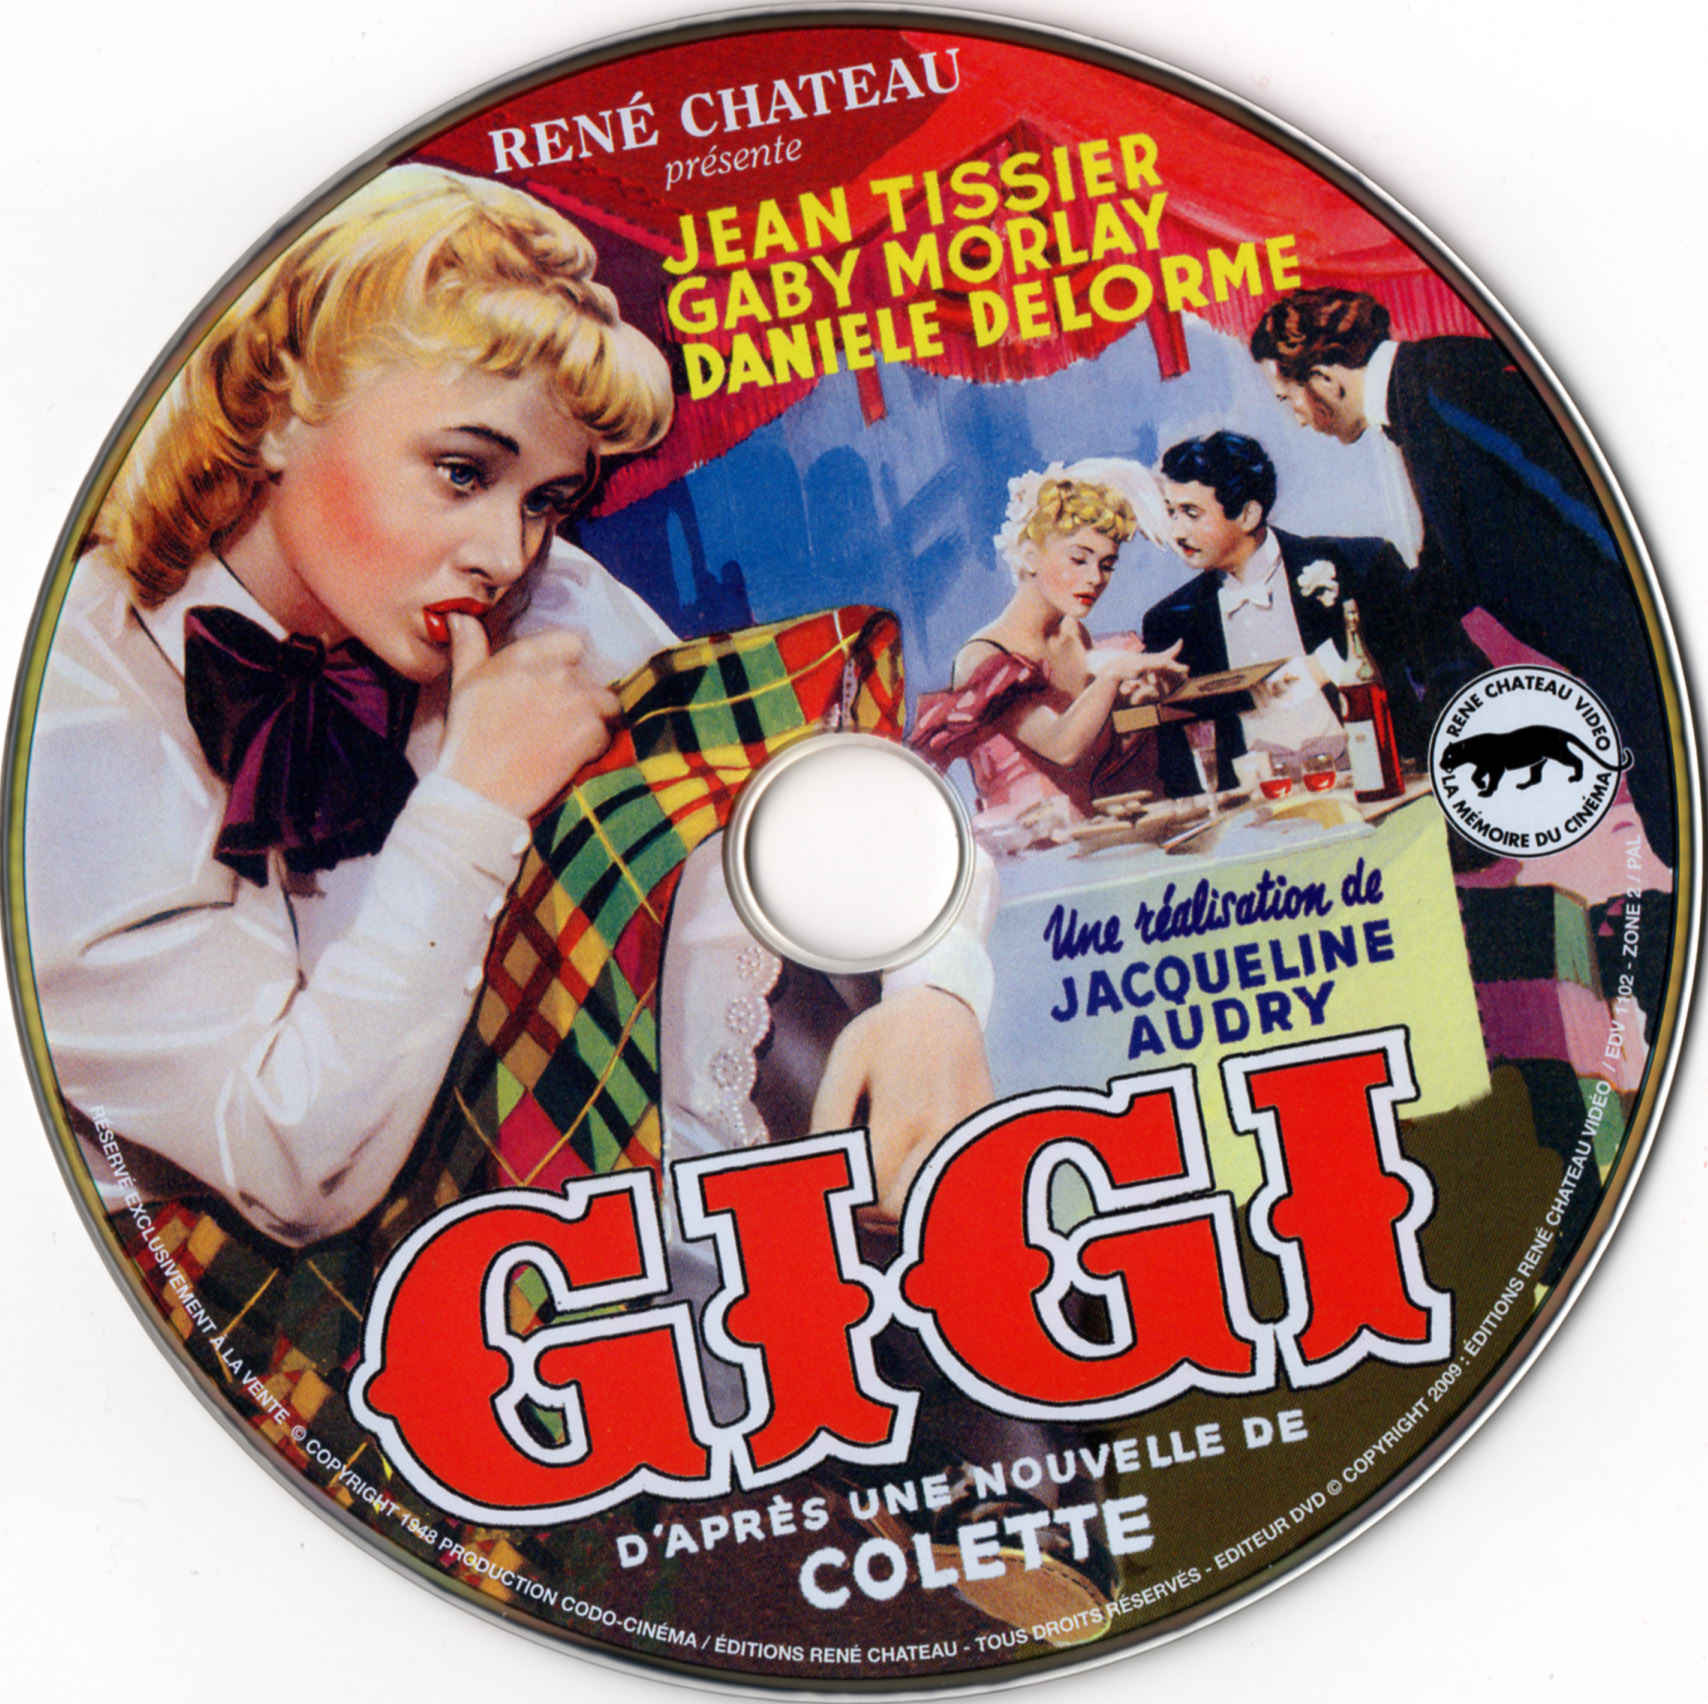 Gigi (1949)